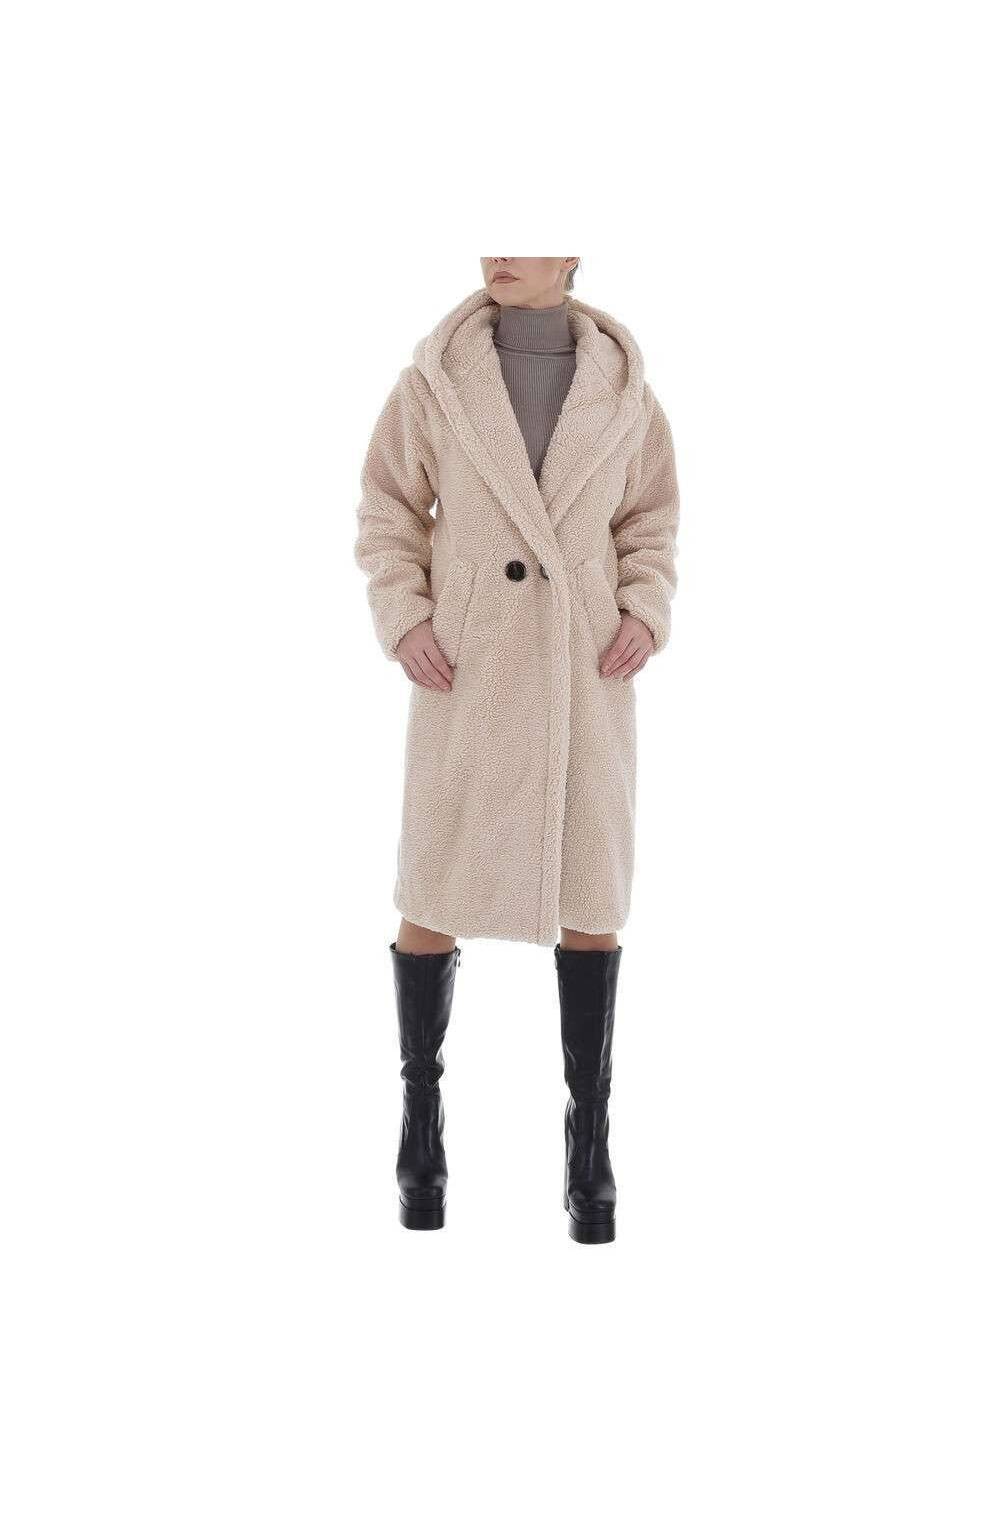 Smėlio spalvos žieminis paltas moterims GR-8871